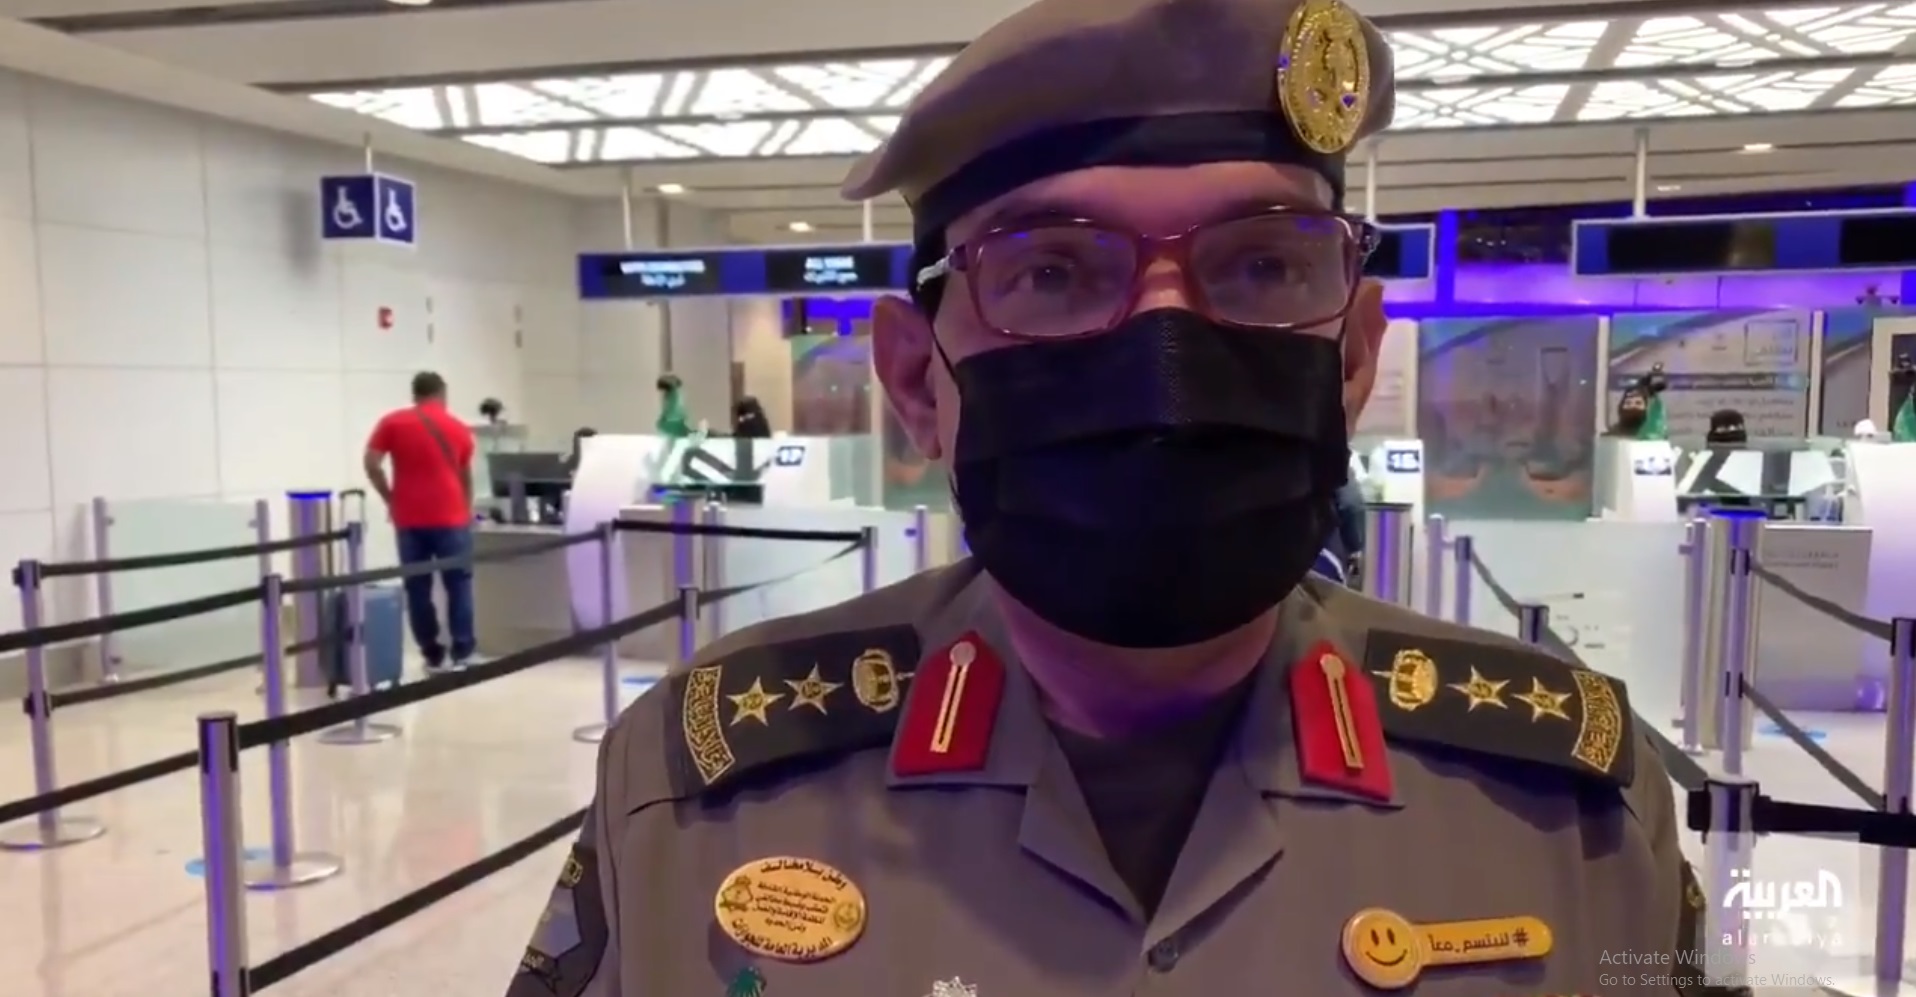 اللحظات الأولى لفتح الرحلات الدولية للمواطنين في مطار الملك عبدالعزيز